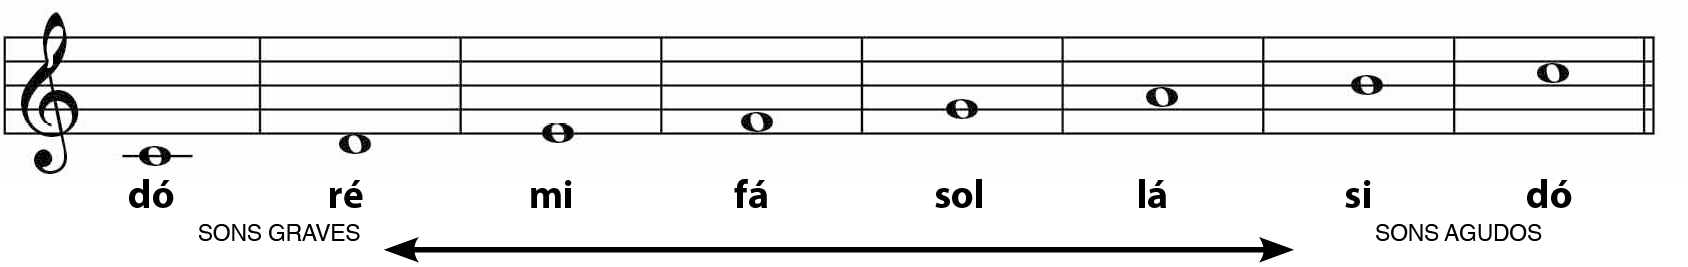 Ilustração. Pentagrama musical dividido em oito partes demarcadas por linhas verticais. Sequencialmente, estão as notas musicais, iniciando abaixo do pentagrama e dispostas sucessivamente, nas linhas e nos espaços entre elas,  até o penúltimo espaço: do; ré; mi; fá; sol; lá; si; dó. Abaixo há um traço horizontal com uma seta em cada ponta: à esquerda está indicado 'sons graves', e à direita, 'sons agudos'.